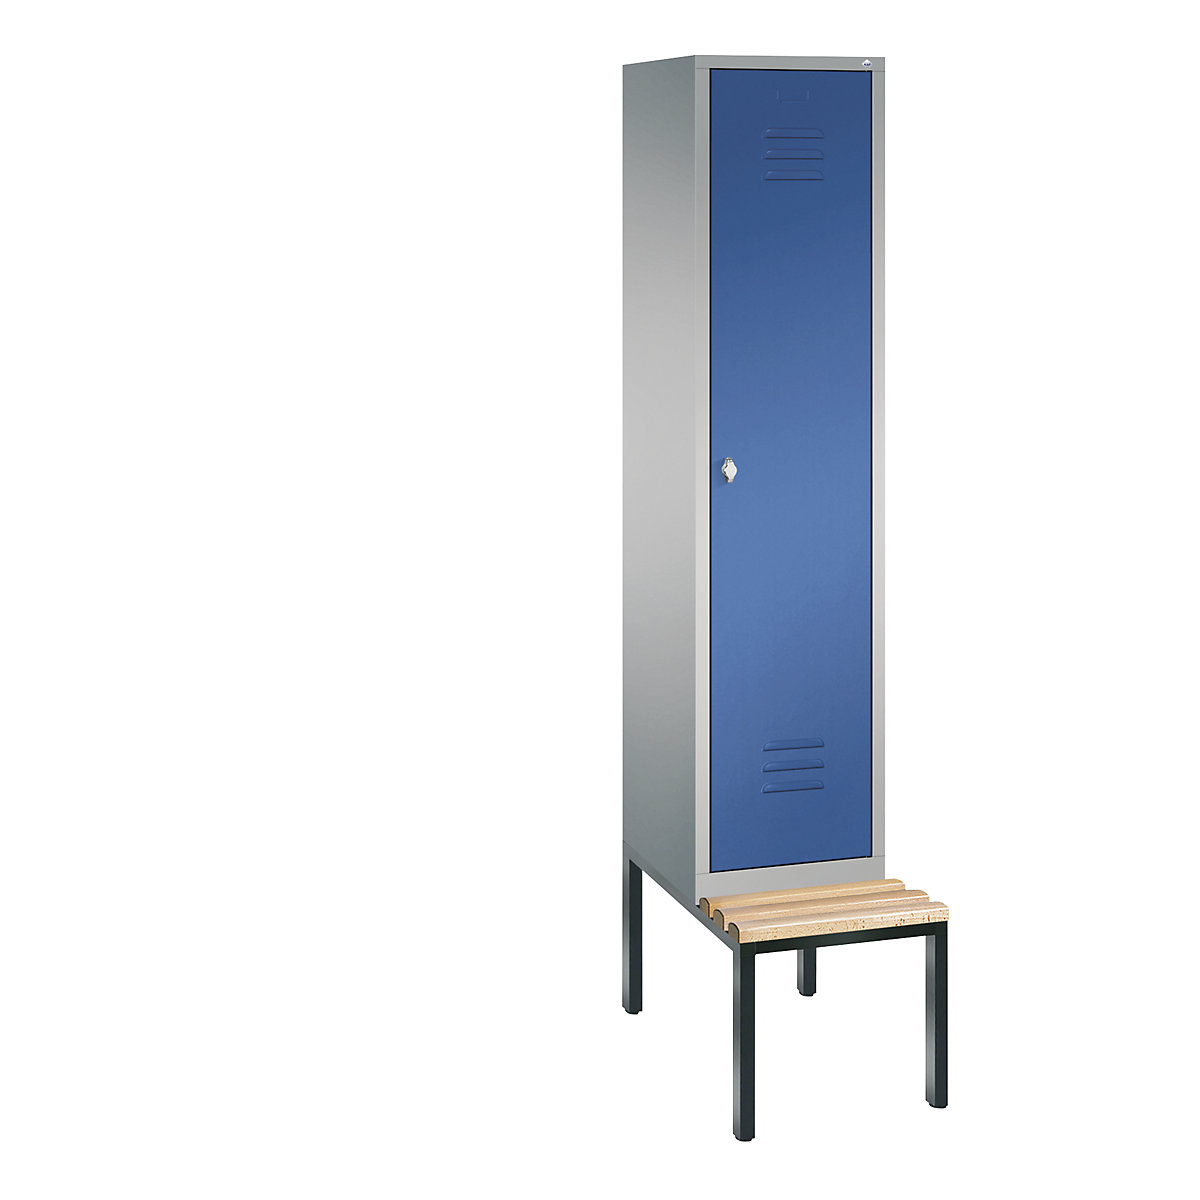 Garderobna omara CLASSIC s klopjo – C+P, 1 predelek, širina 400 mm/predelek, aluminijasto bele / encijan modre barve-5